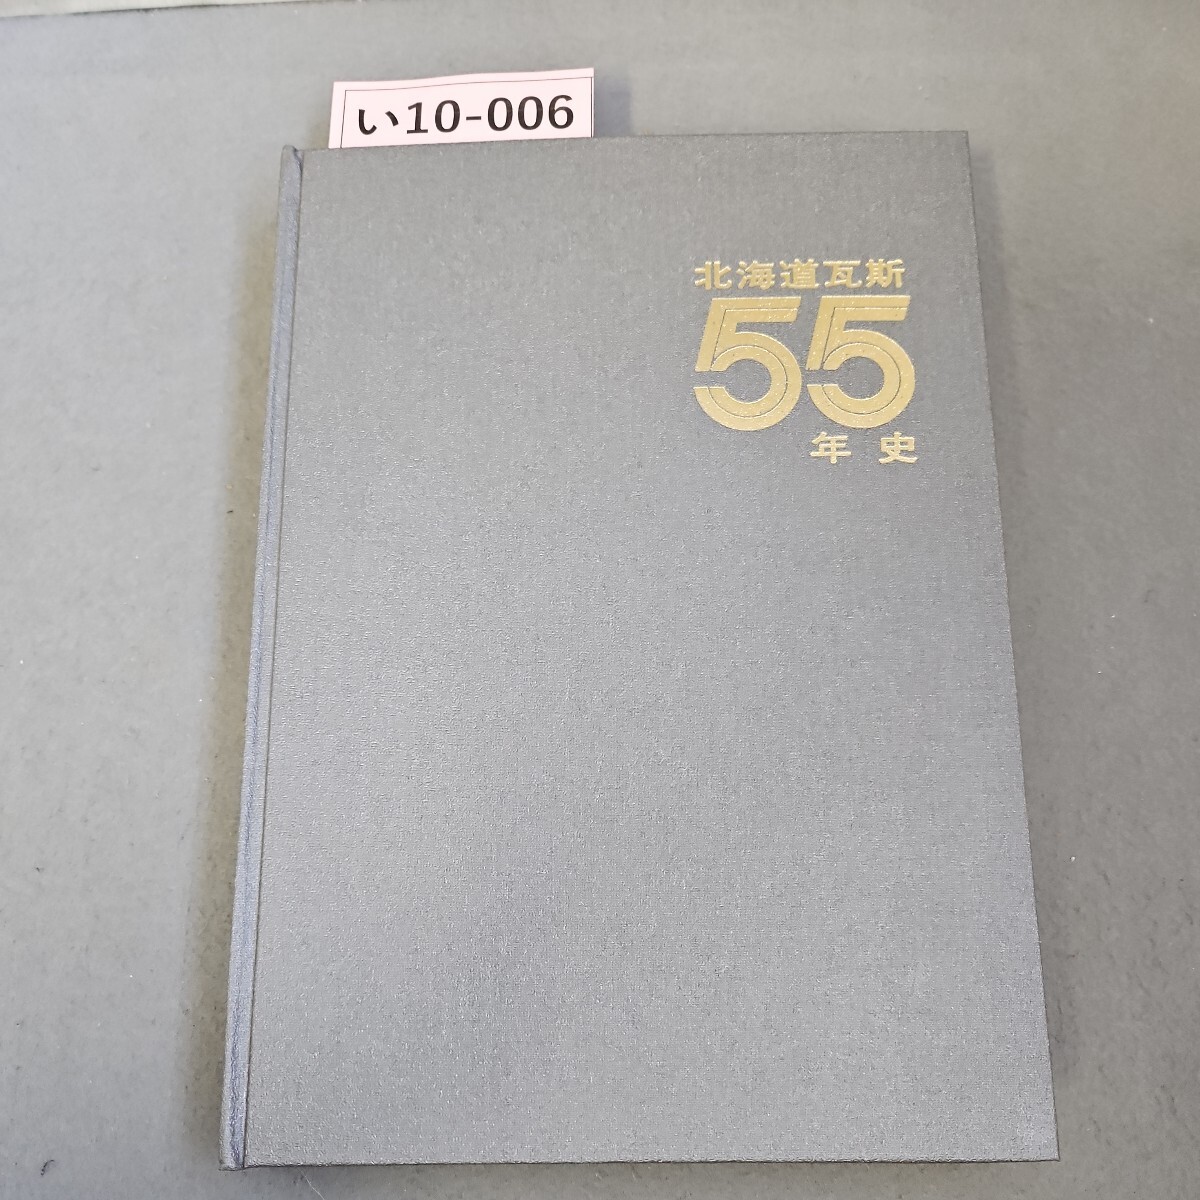 い10-006 昭和41年11月20日 発行 北海道瓦斯55年史